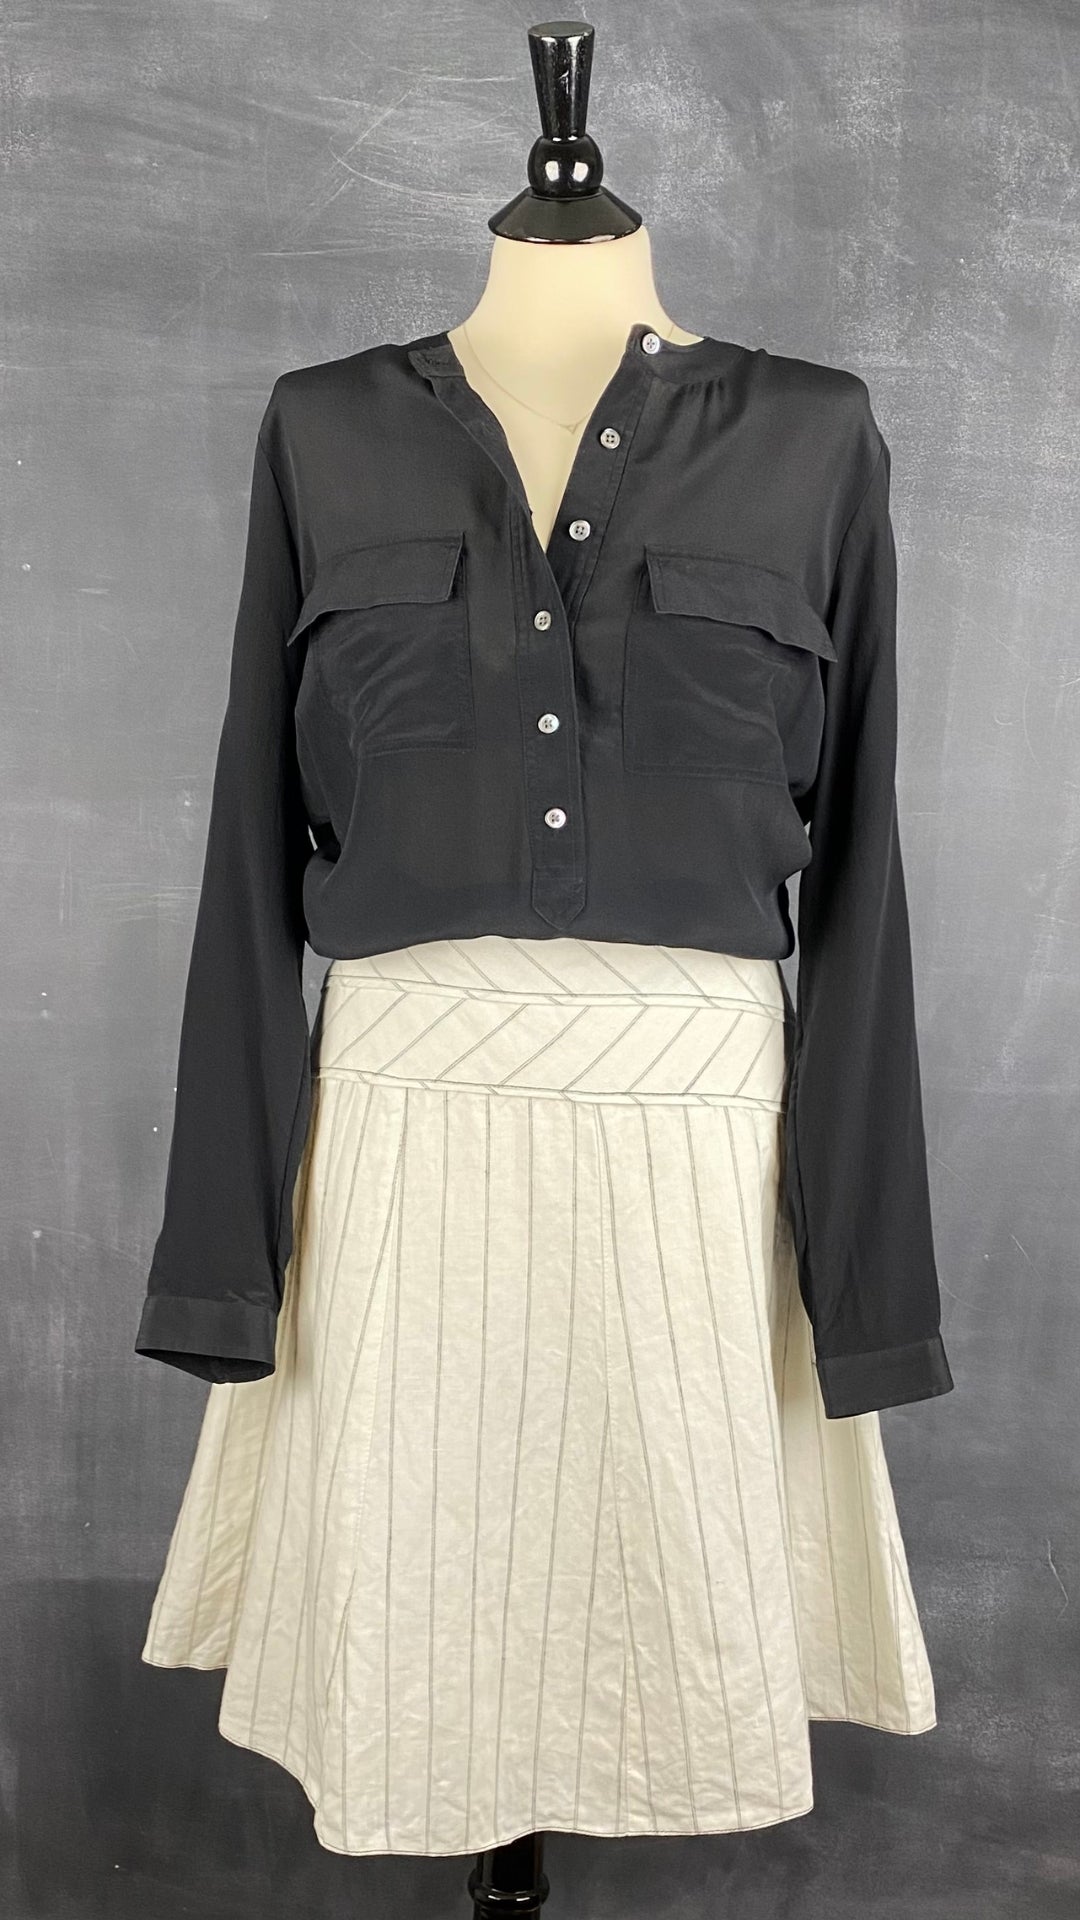 Jupe circulaire à rayures en lin Sandra Angelozzi, taille estimée à large. Vue de l'agencement avec la blouse en soie noire.